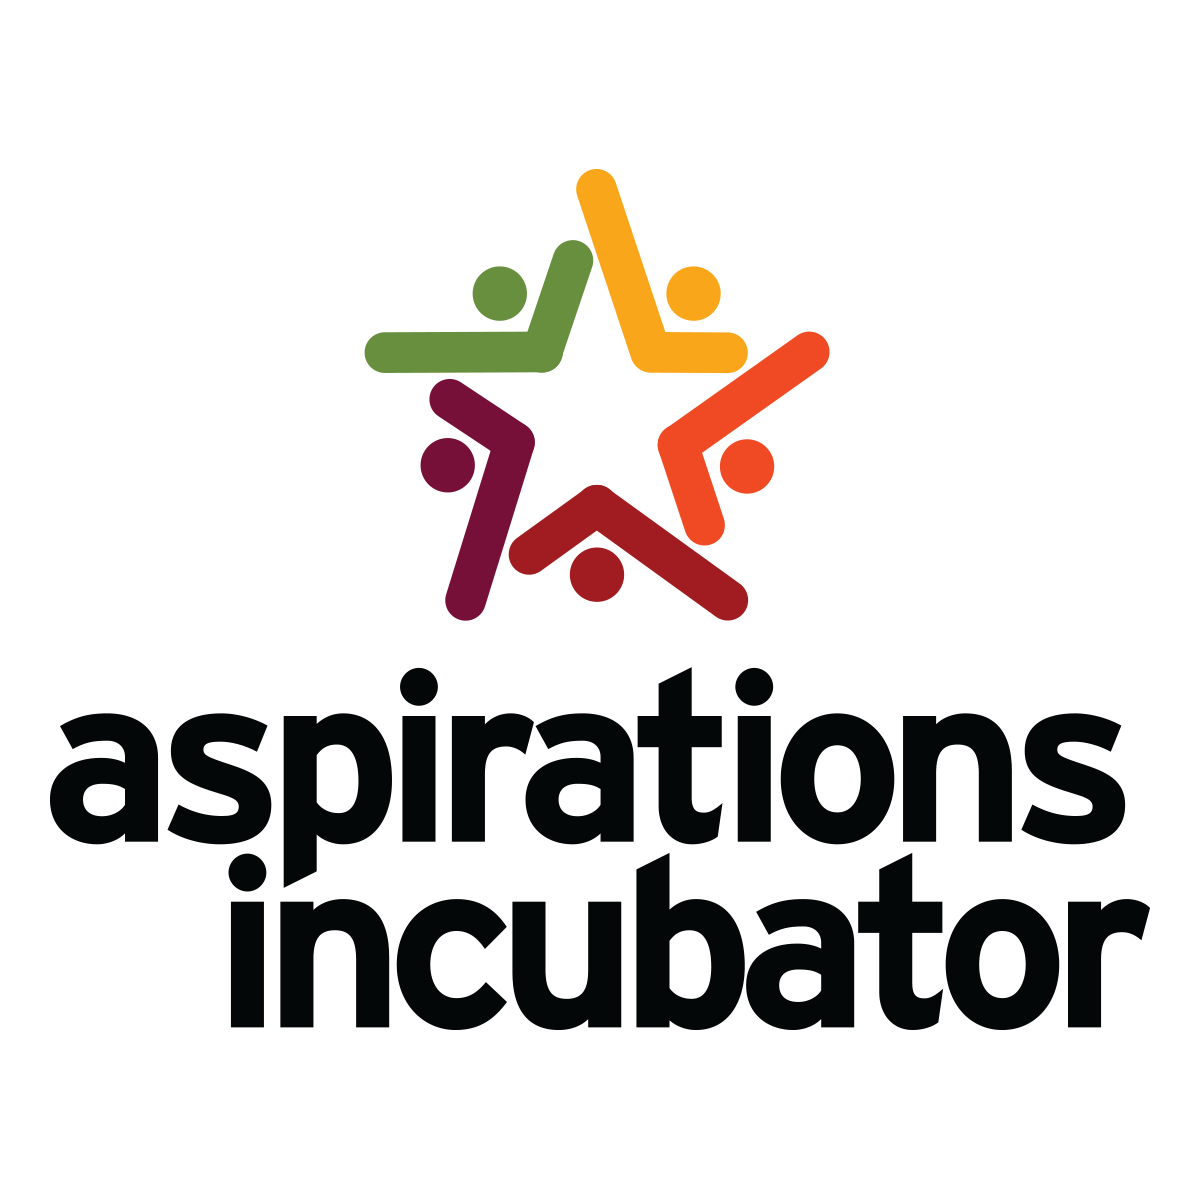 Aspirations Incubator